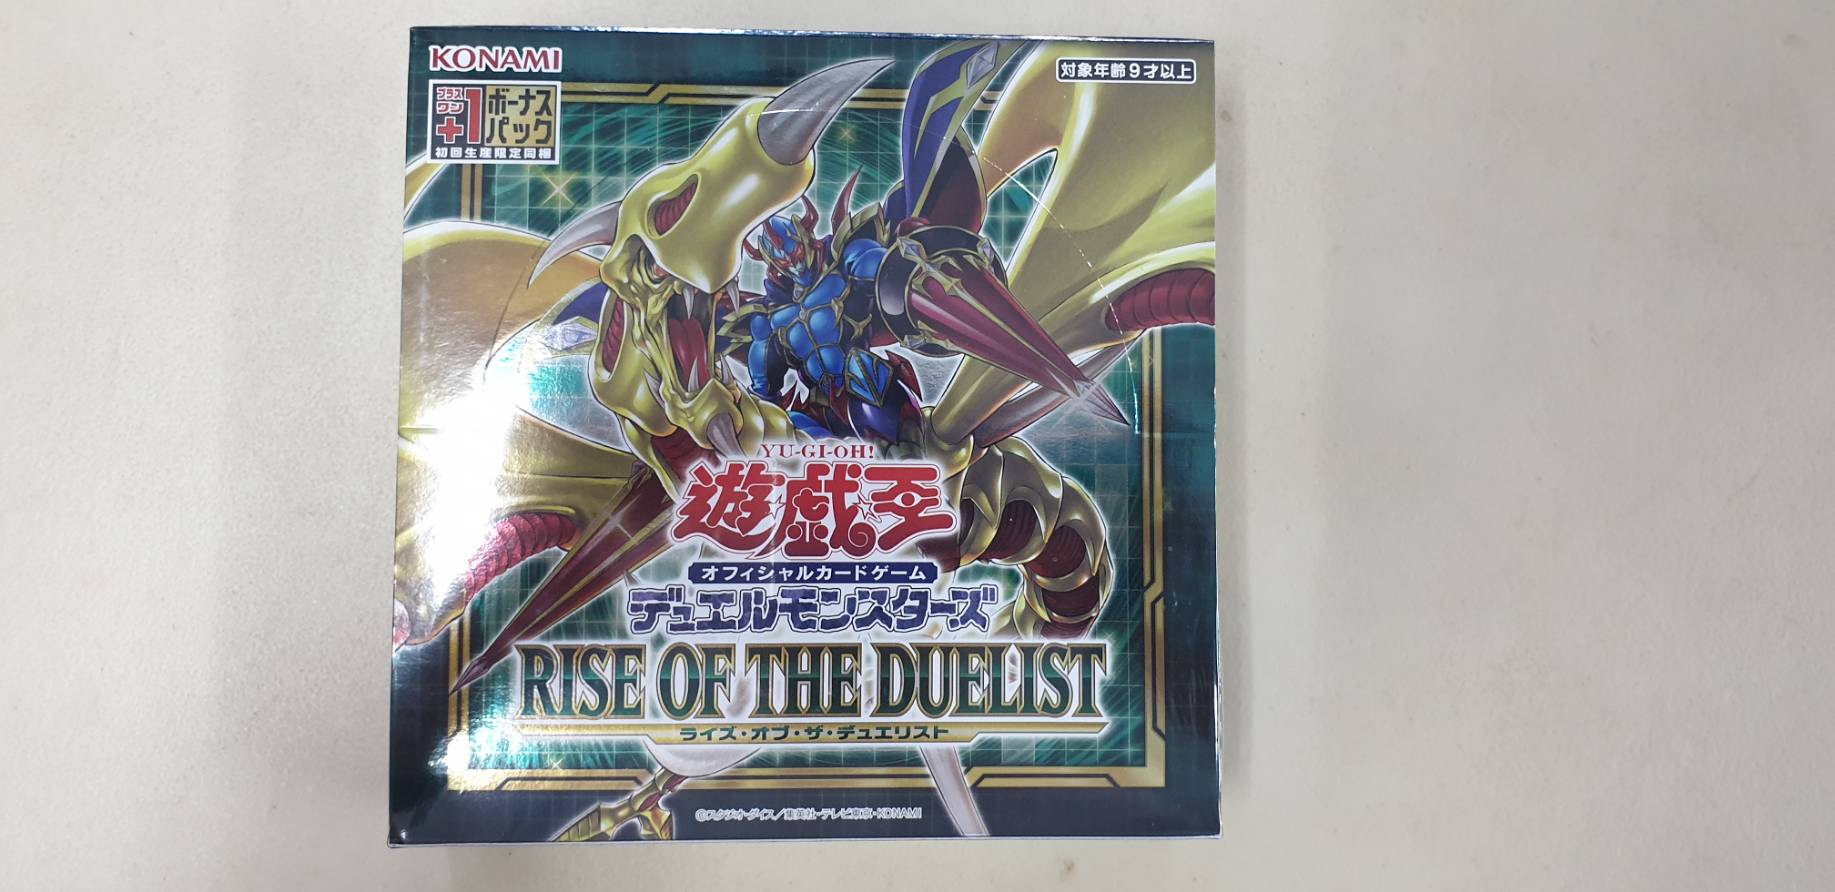 การ์ดยูกิโอ Yu-Gi-Oh! TCG Duel Monsters Box RISE OF THE DUELIST [Box]